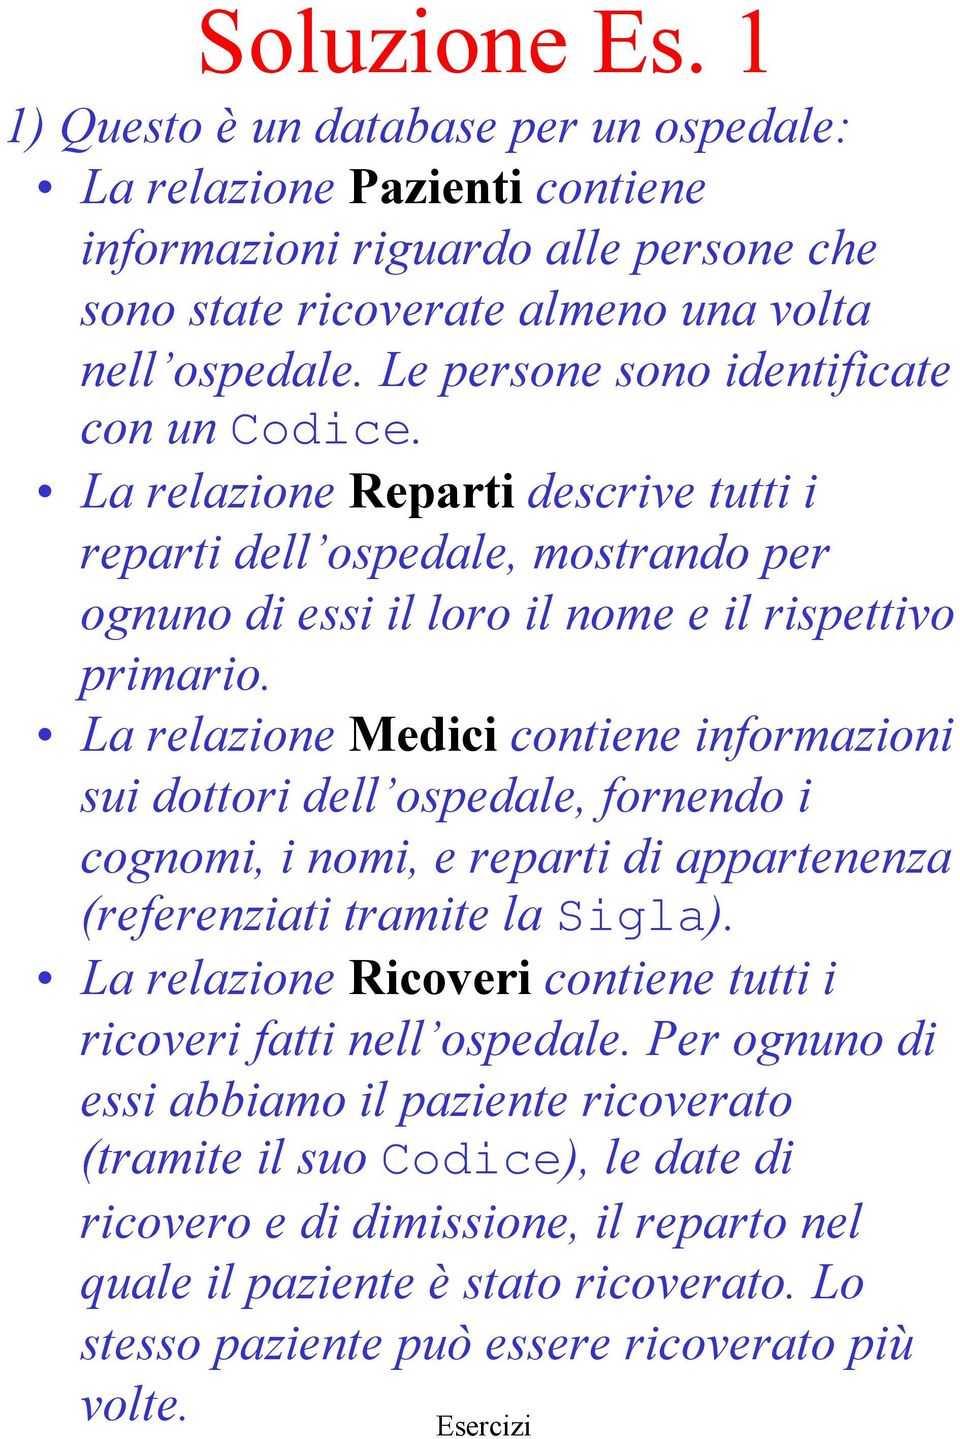 La relazione Medici contiene informazioni sui dottori dell ospedale, fornendo i cognomi, i nomi, e reparti di appartenenza (referenziati tramite la Sigla).